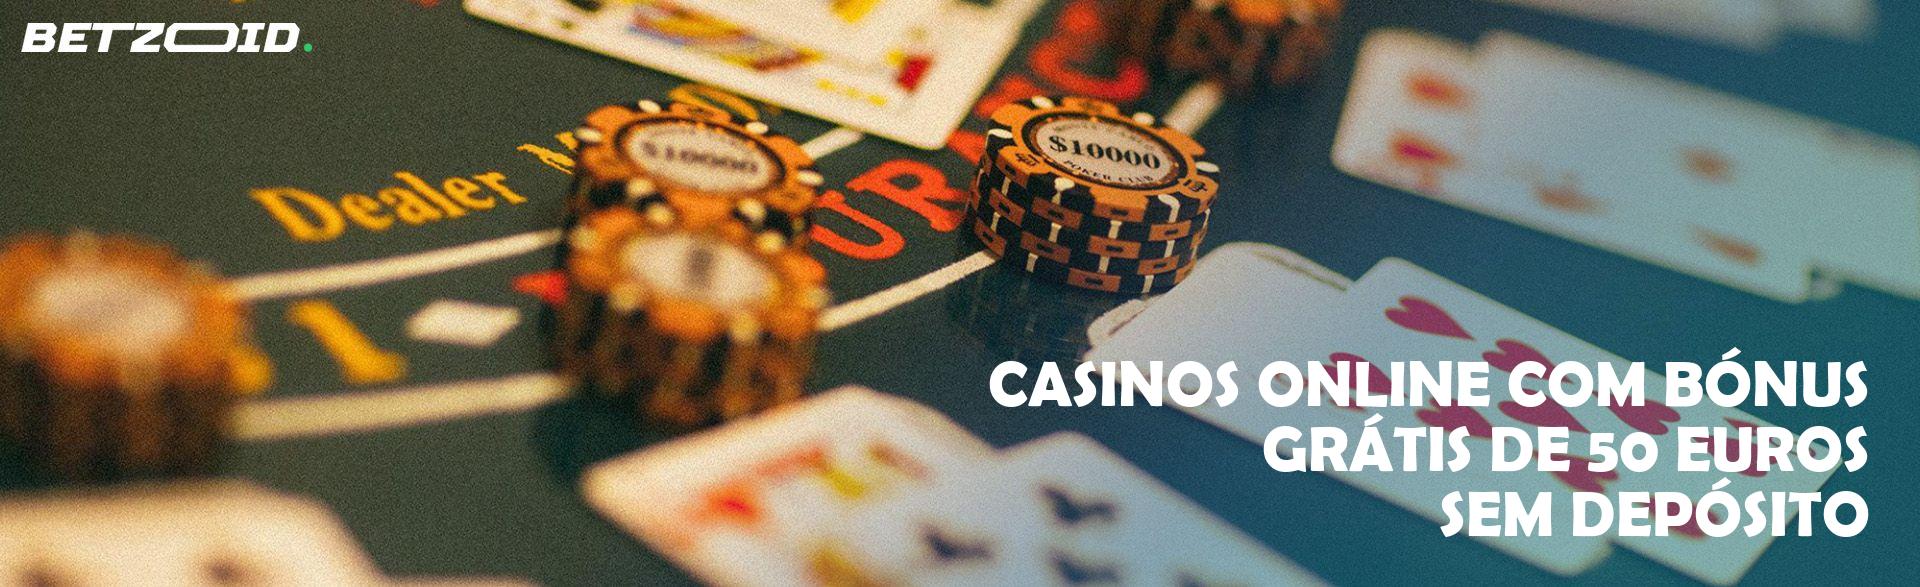 Casinos Online com Bónus Grátis de 50 Euros sem Depósito.